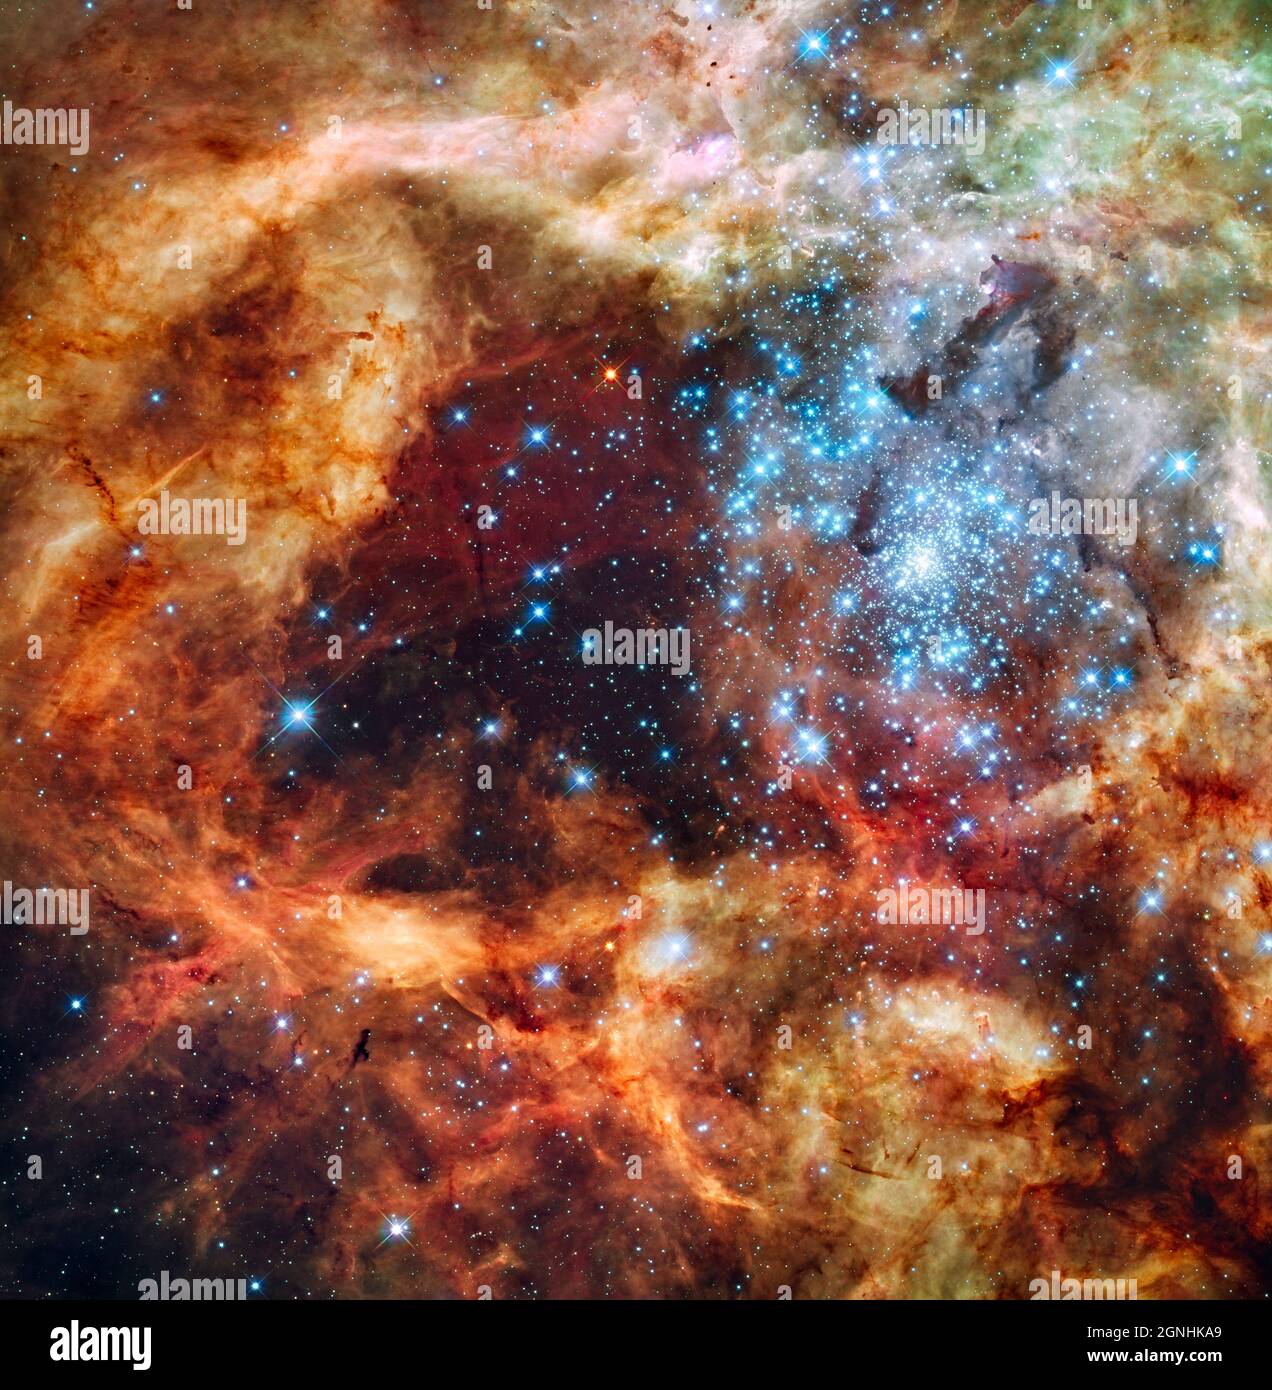 La enorme, joven agrupación estelar, llamada R136, es sólo unos pocos  millones de años de edad y se encuentra en el Doradus Nebulosa de 30, una  turbulenta región de nacimiento de estrellas